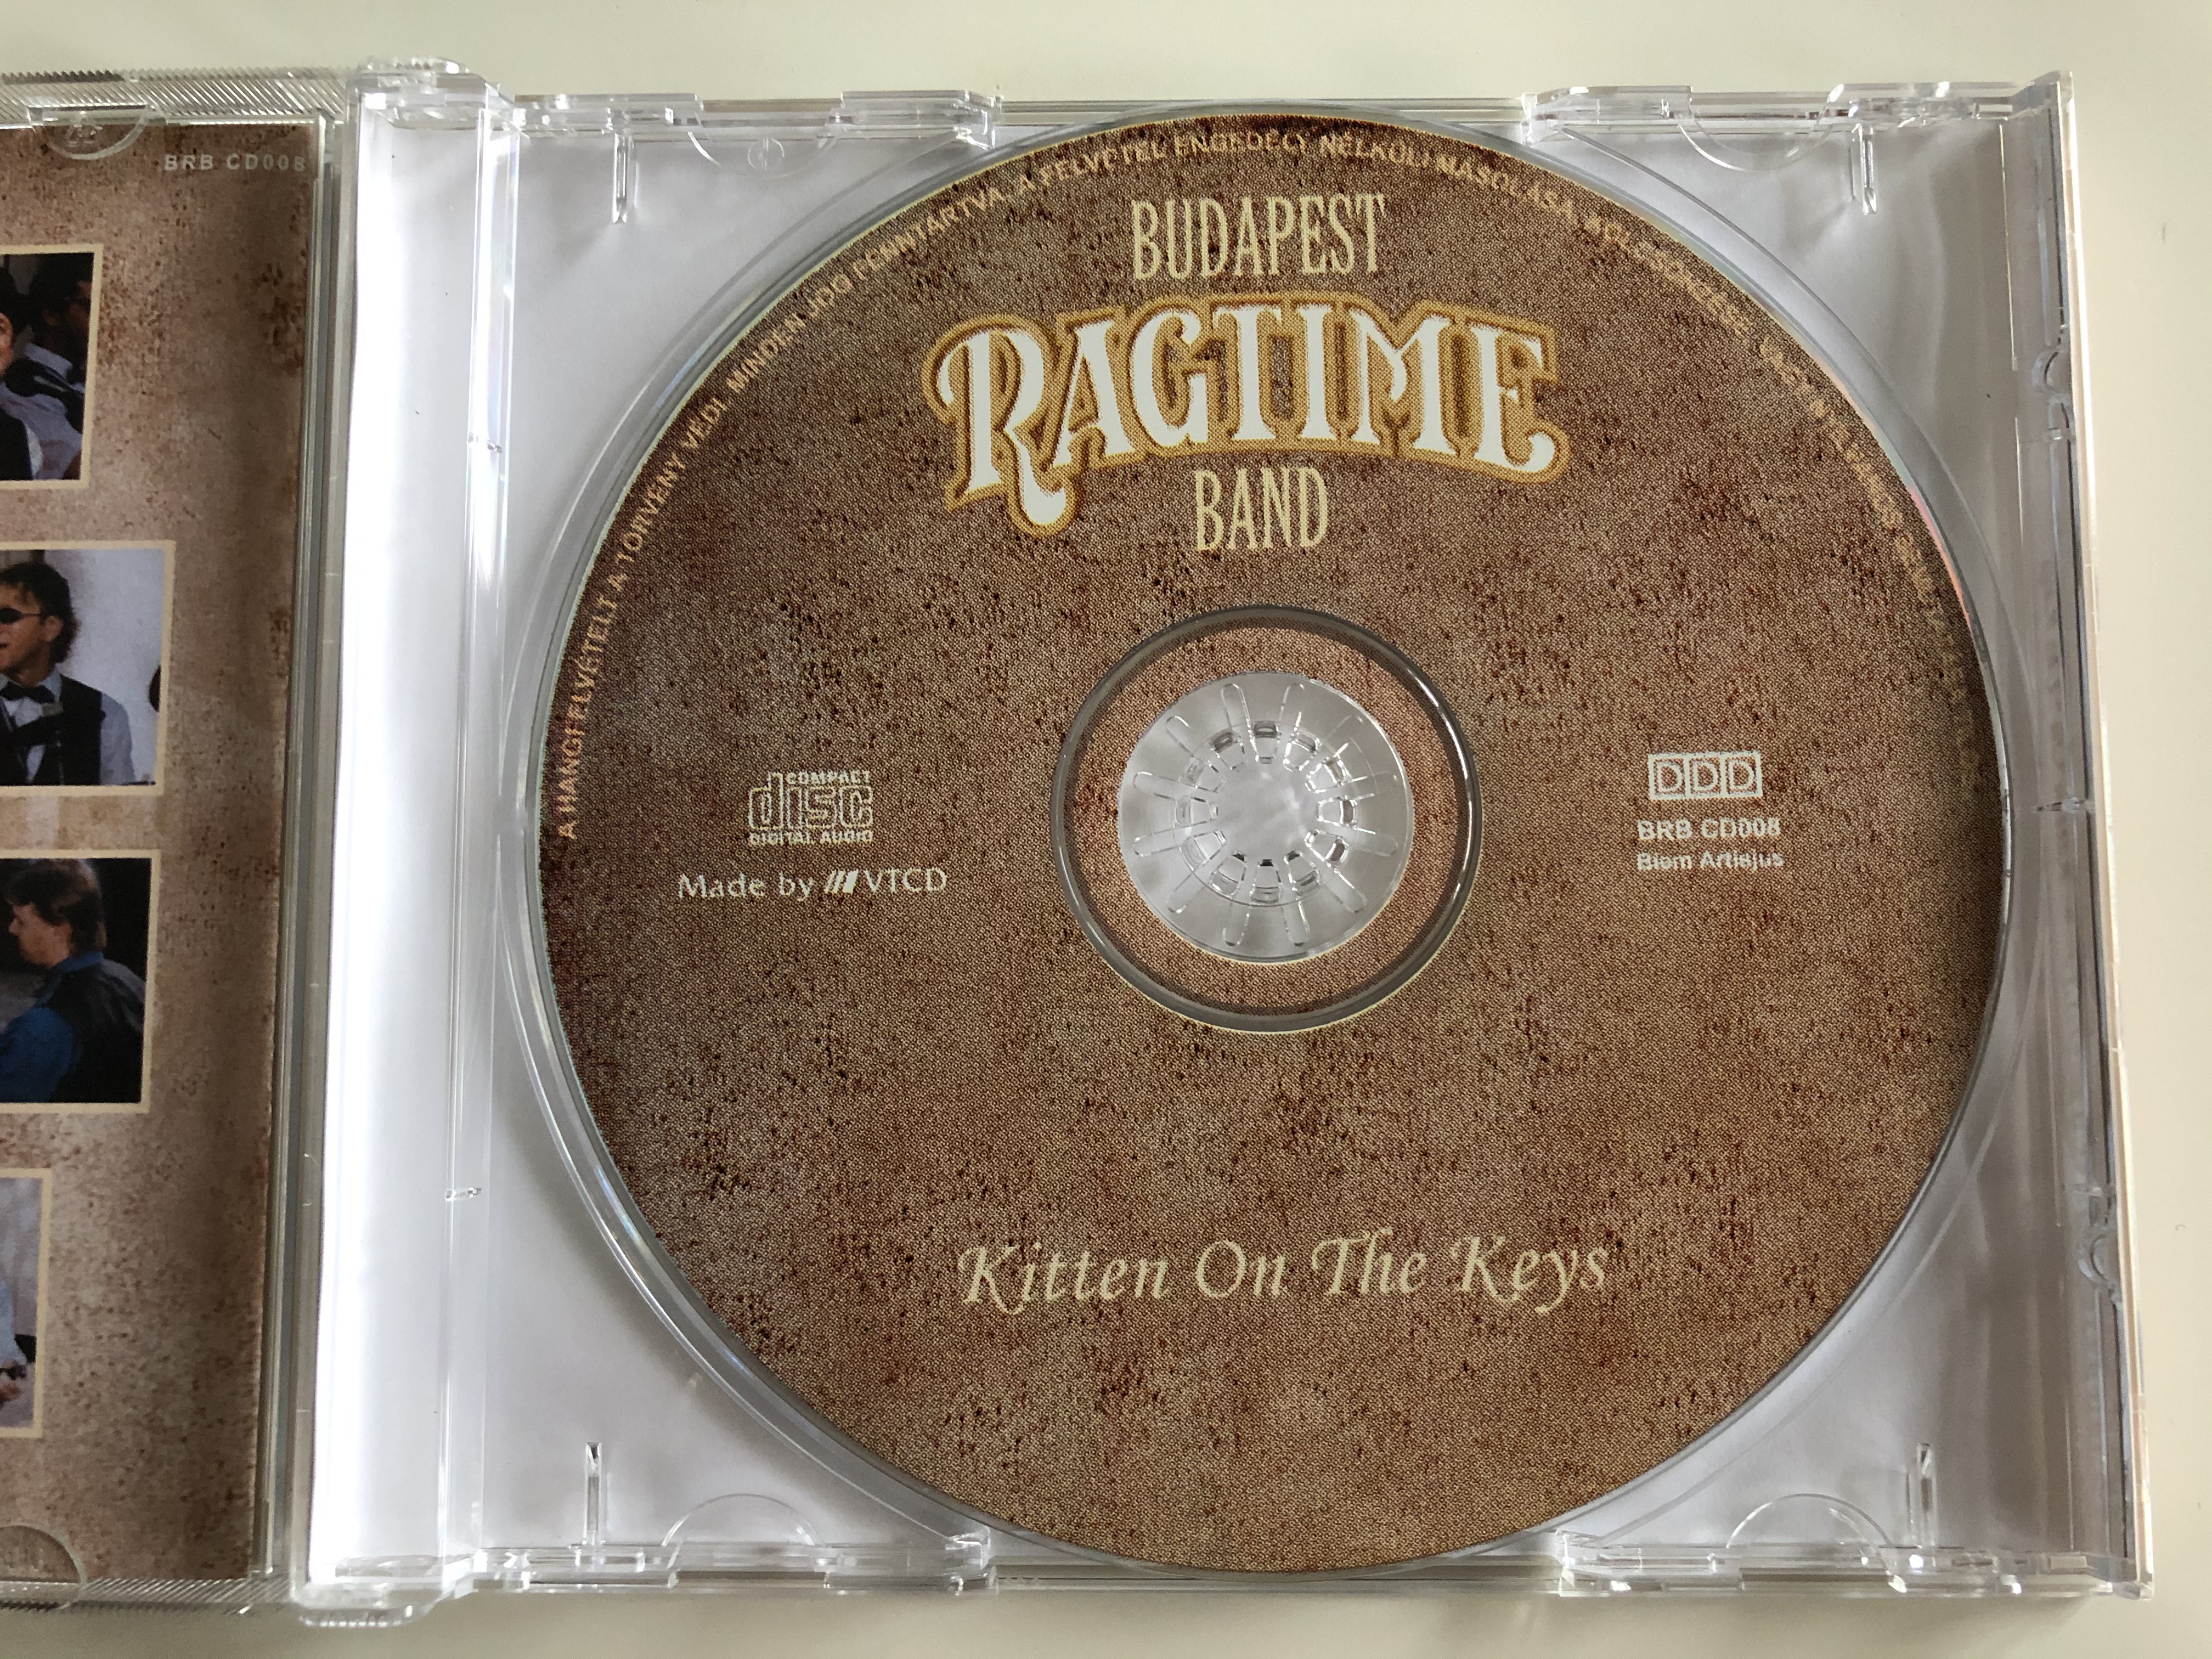 budapest-ragtime-band-kitten-on-the-keys-budapest-ragtime-band-audio-cd-brb-cd008-4-.jpg